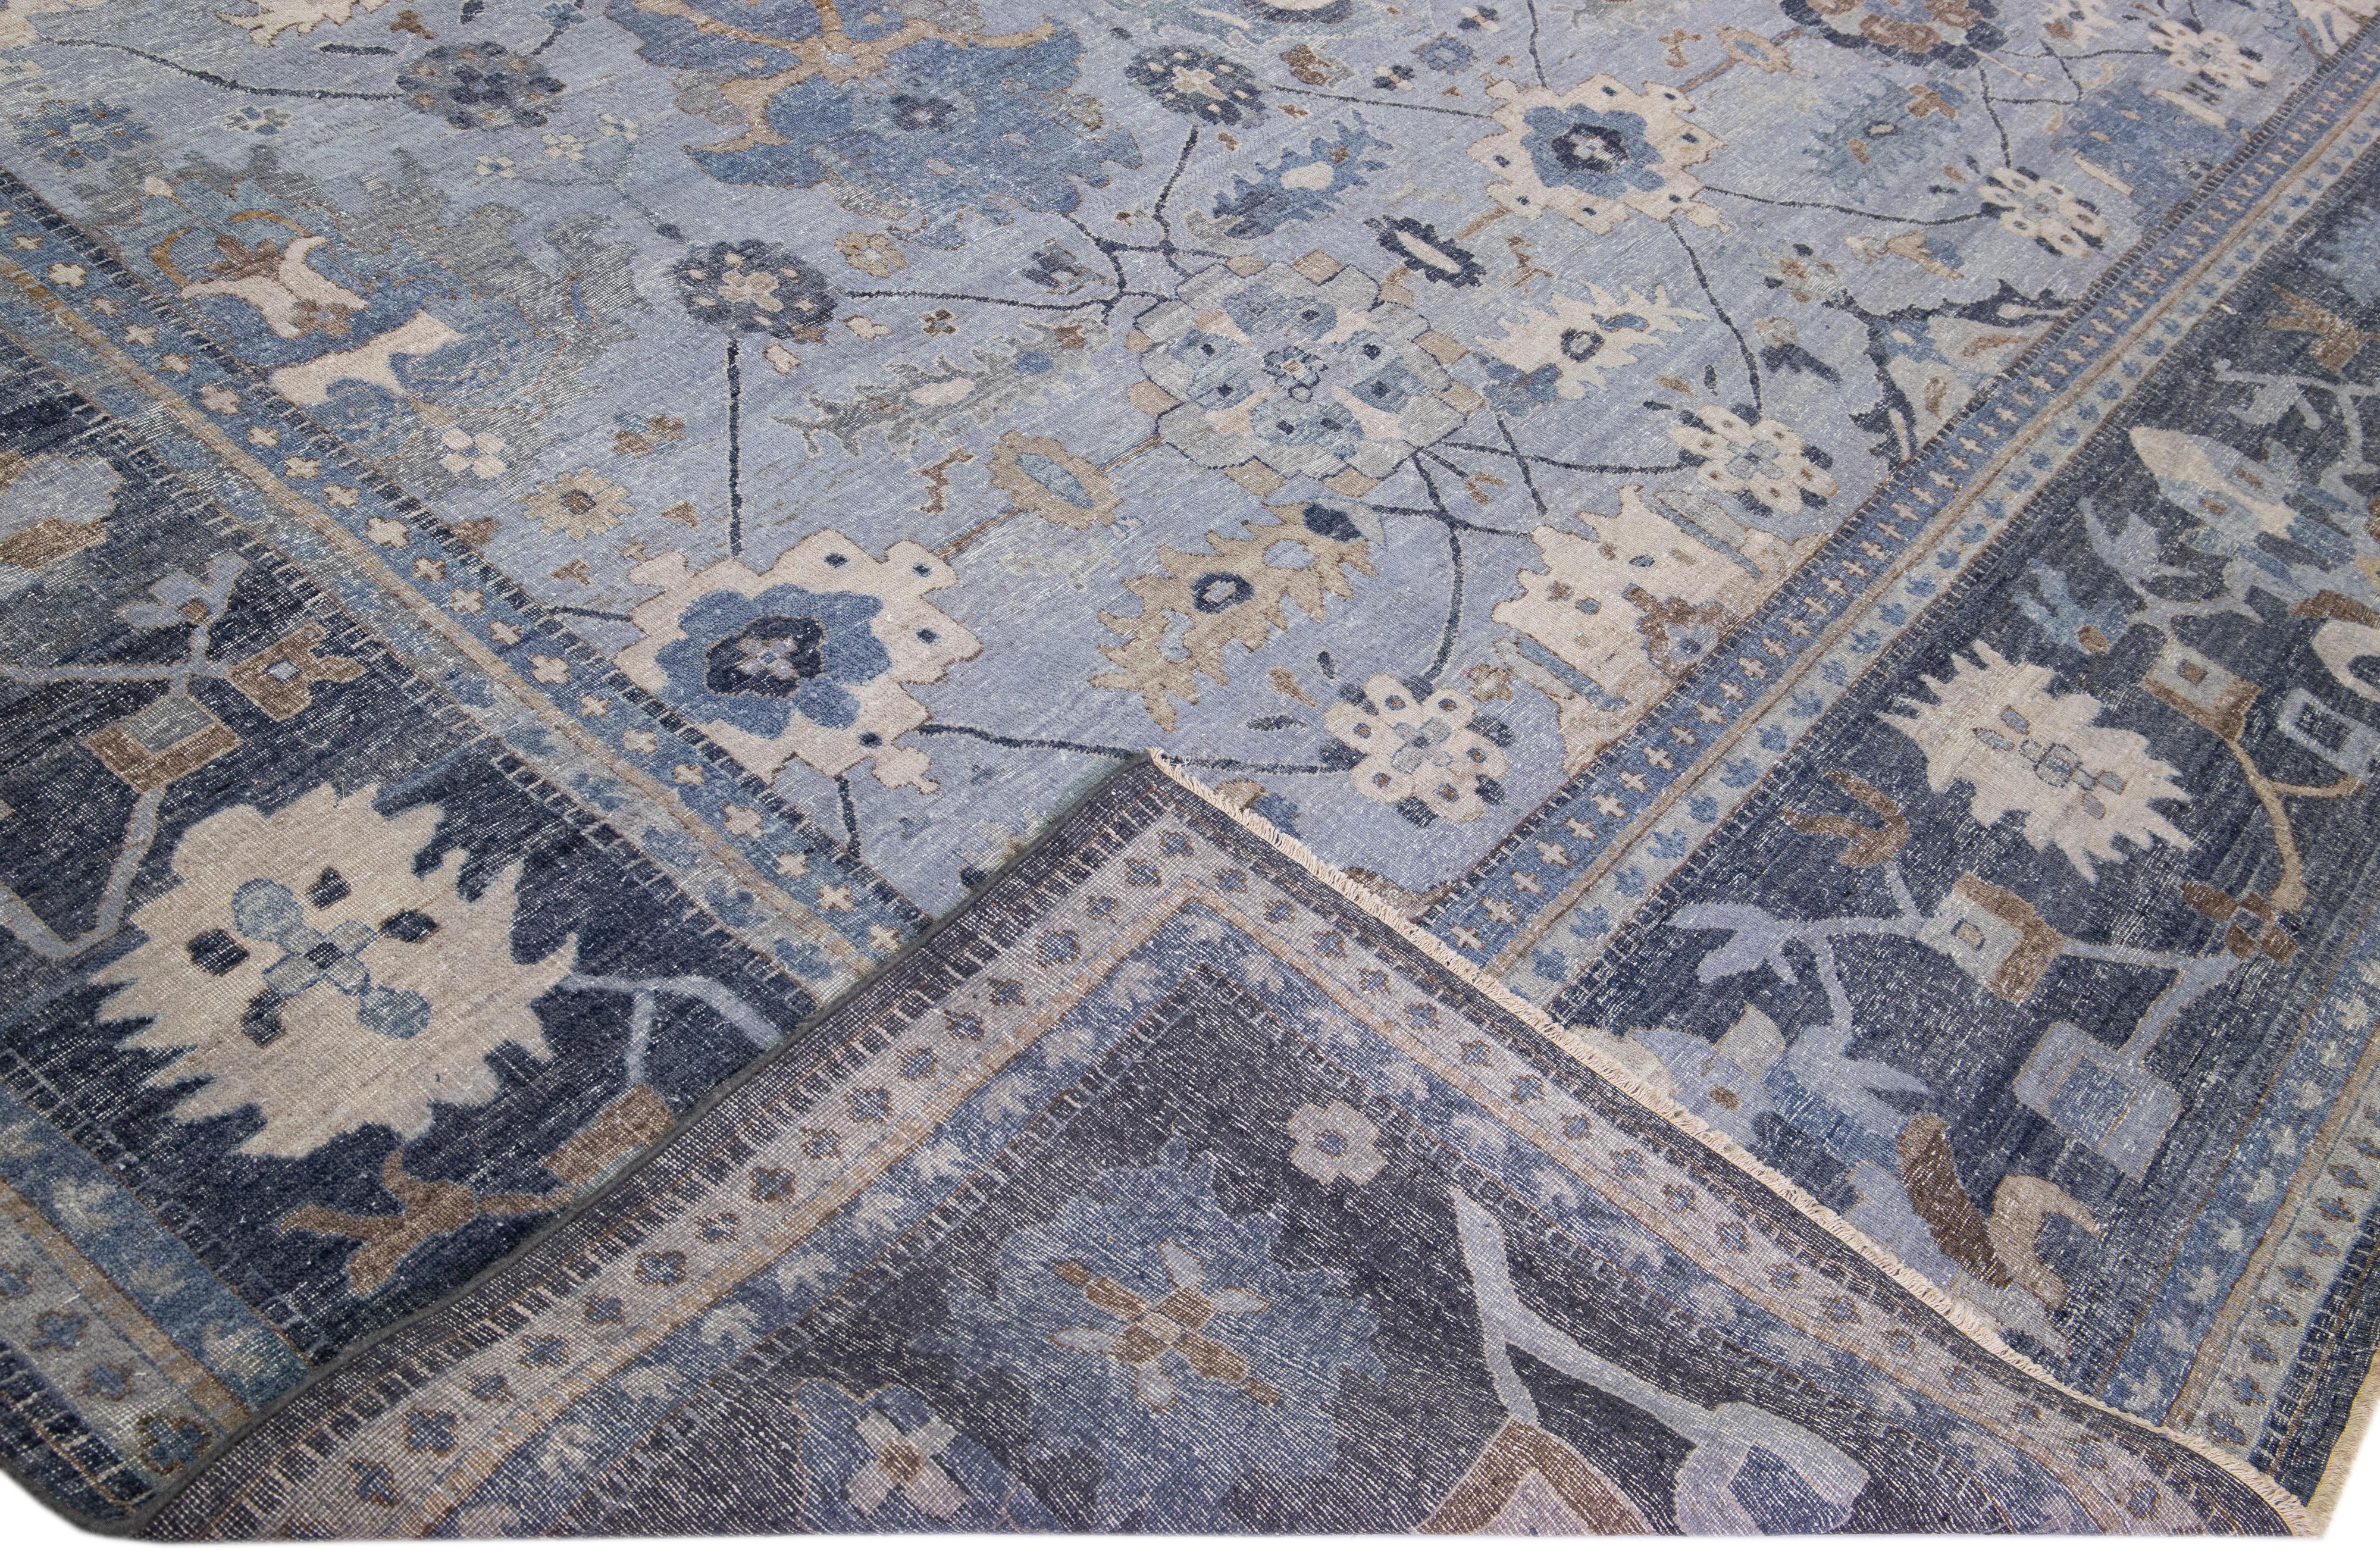 Die Artisan-Linie von Apadana ist ein antiker Teppich, der auf elegante Art und Weise eine auffällige antike Ästhetik in einen Raum bringt. Diese Teppichserie ist ausgesprochen einzigartig und definiert das Aussehen eines antiken Teppichs neu. Jedes